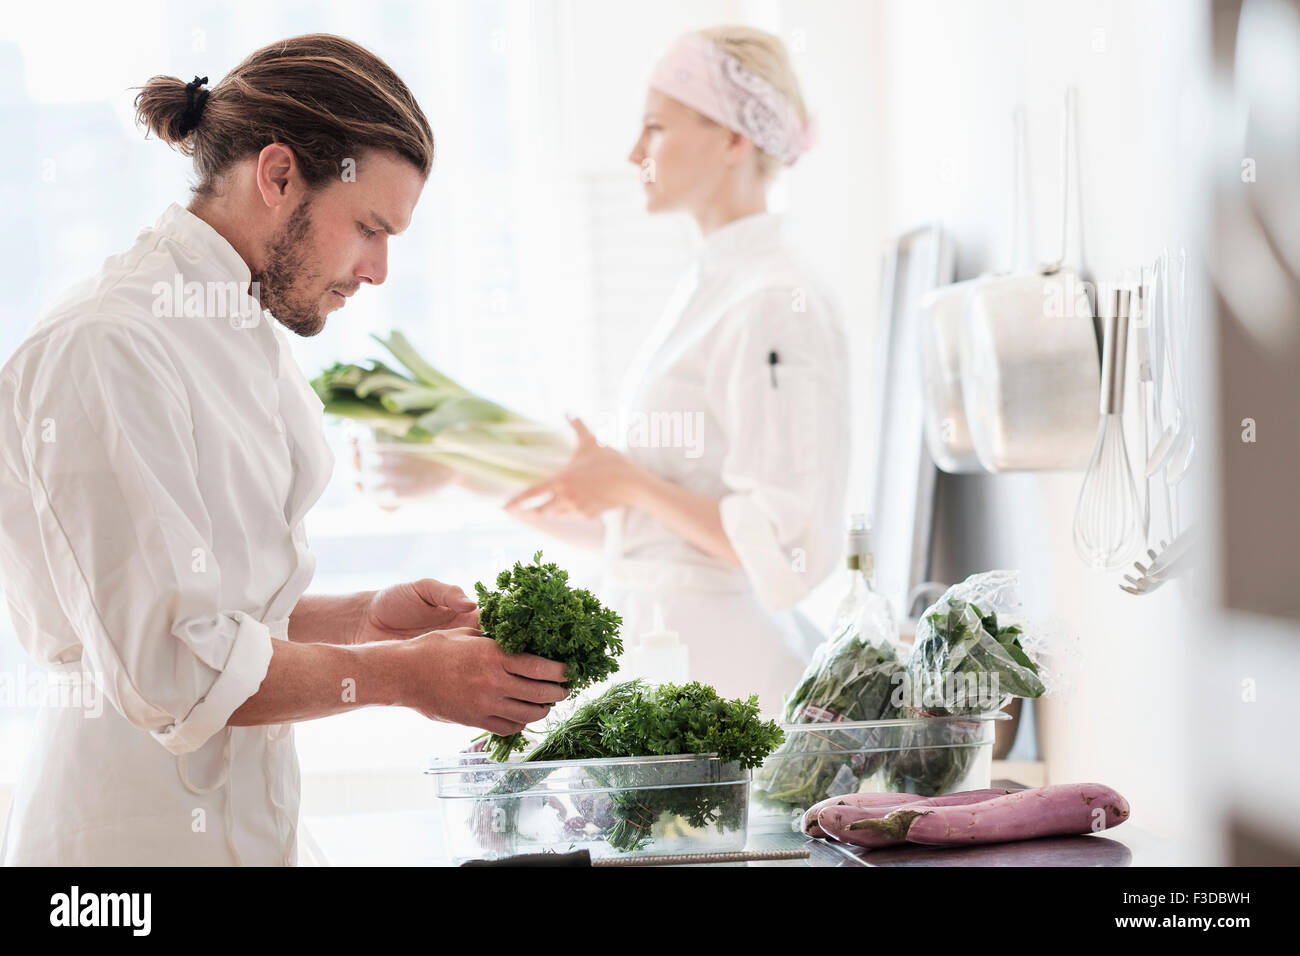 Chefs working in kitchen Stock Photo